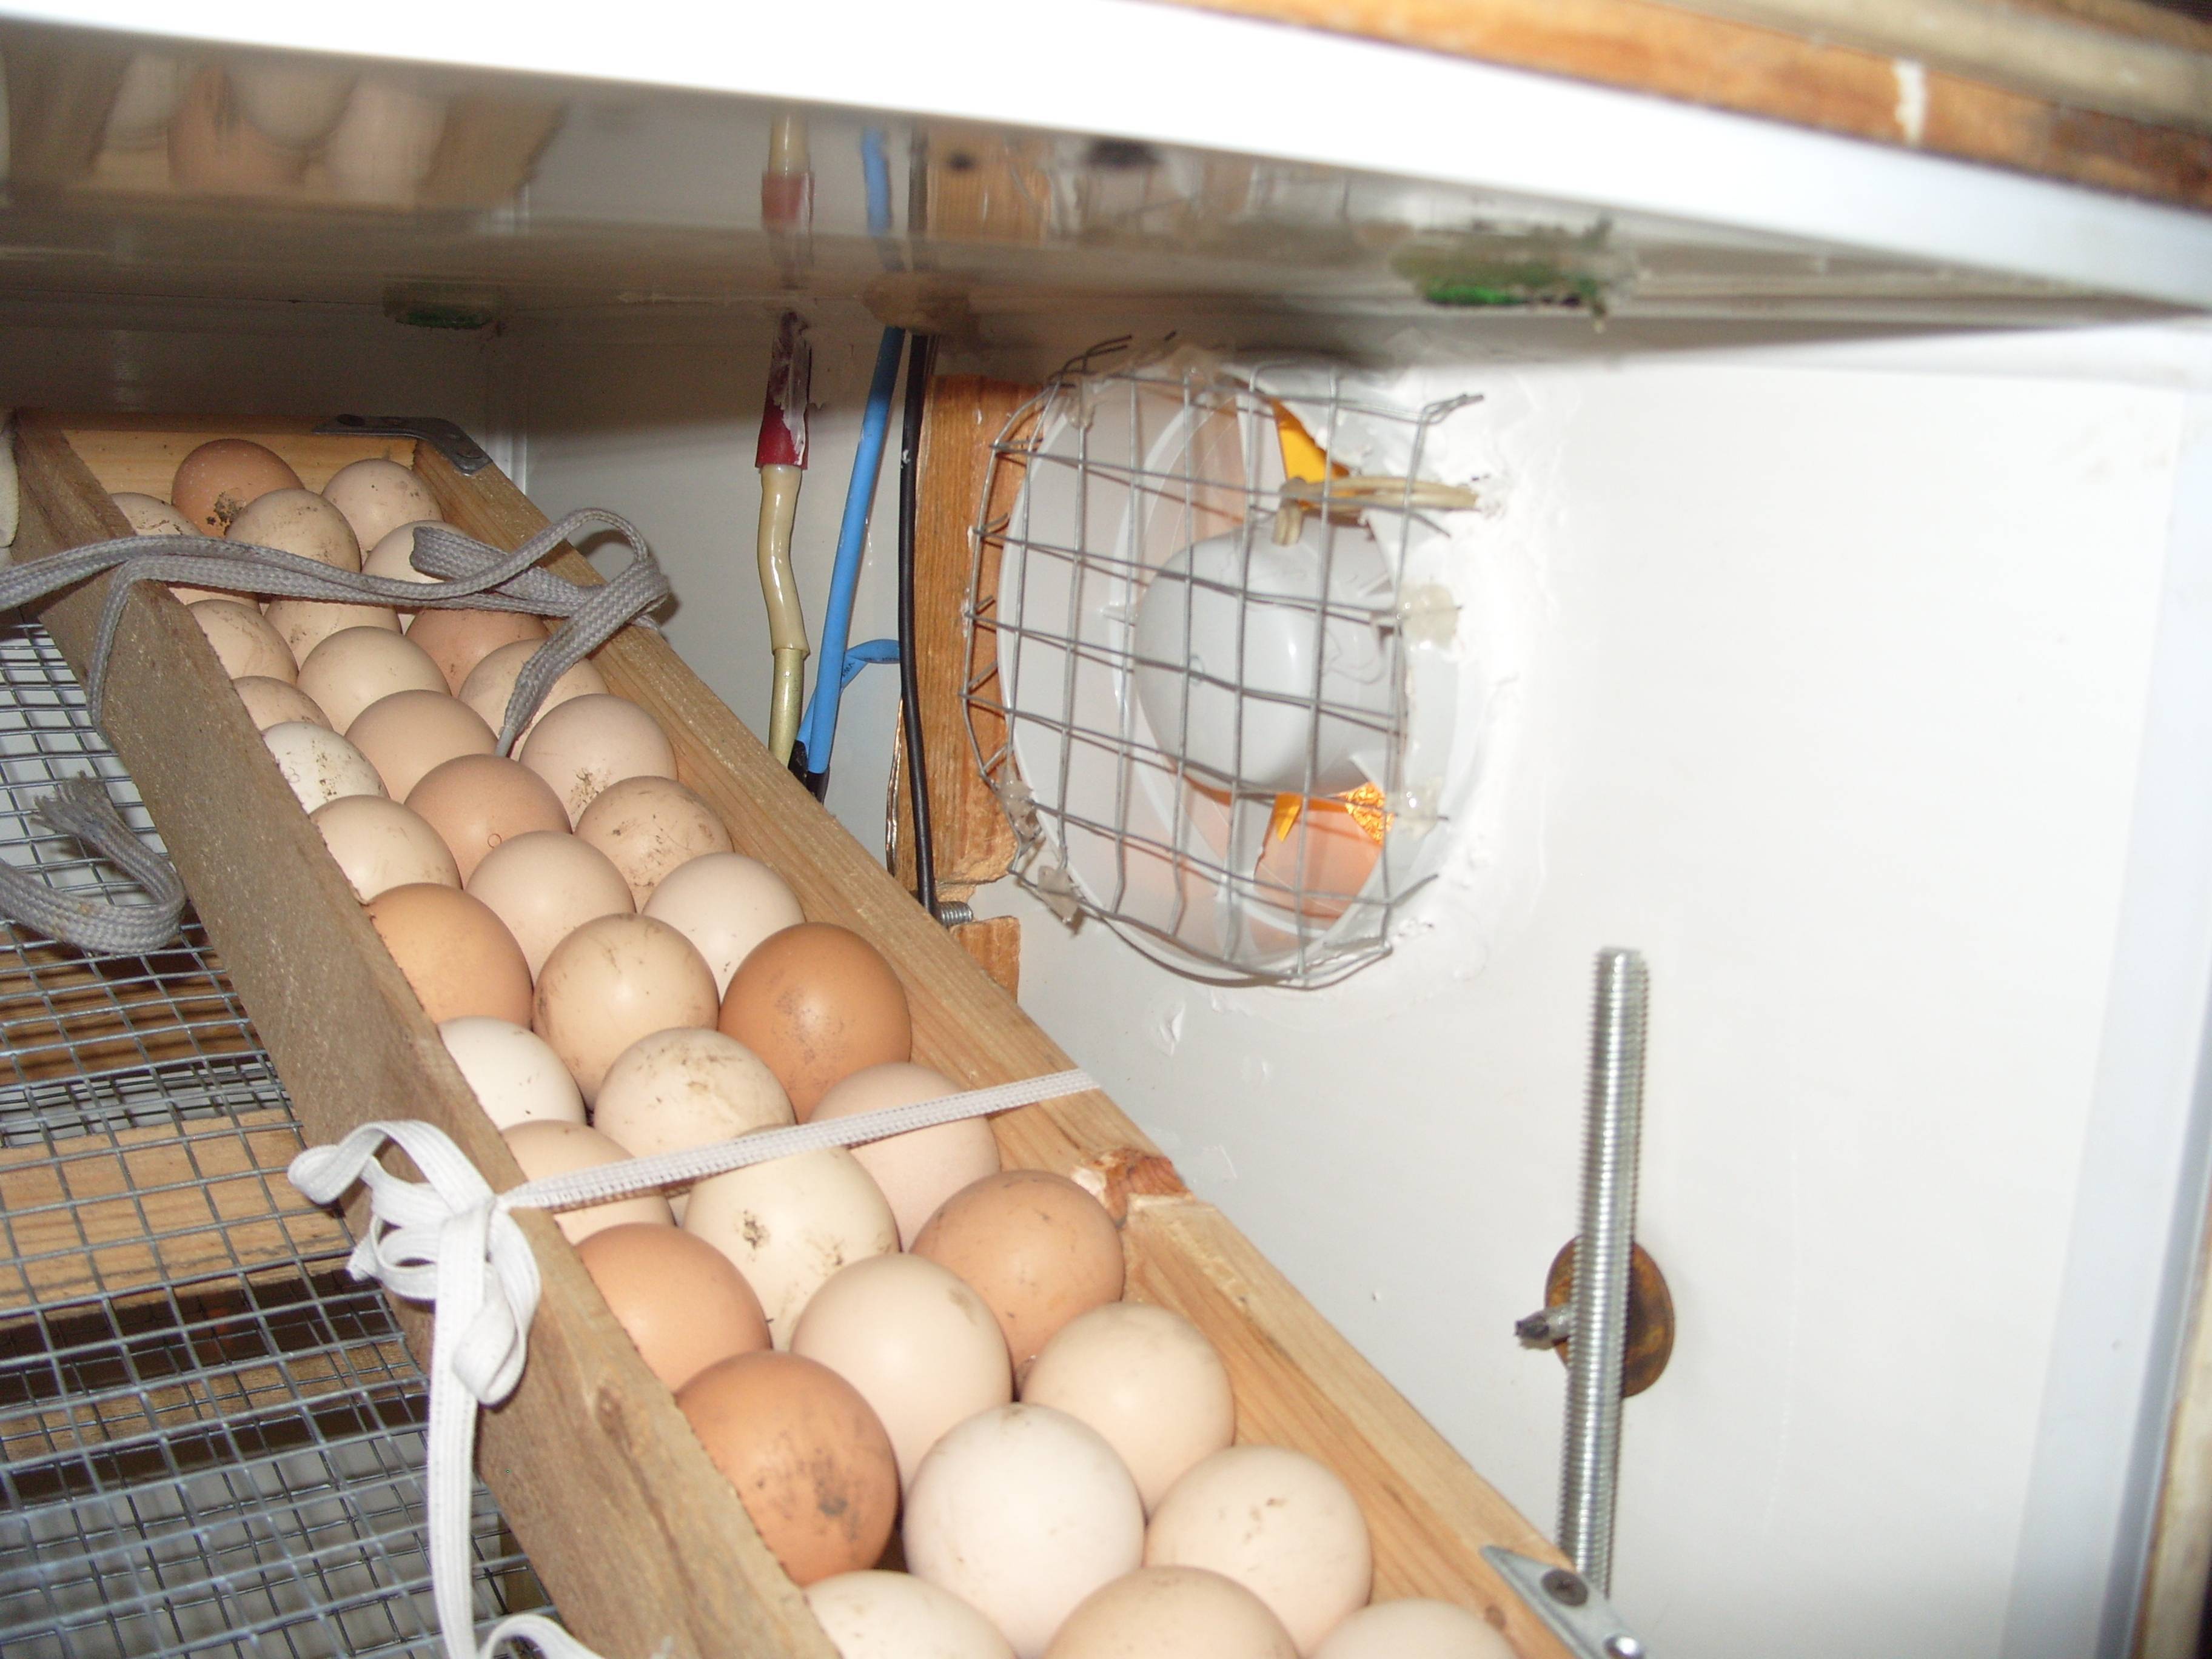 Процесс инкубации куриных яиц в домашних условиях